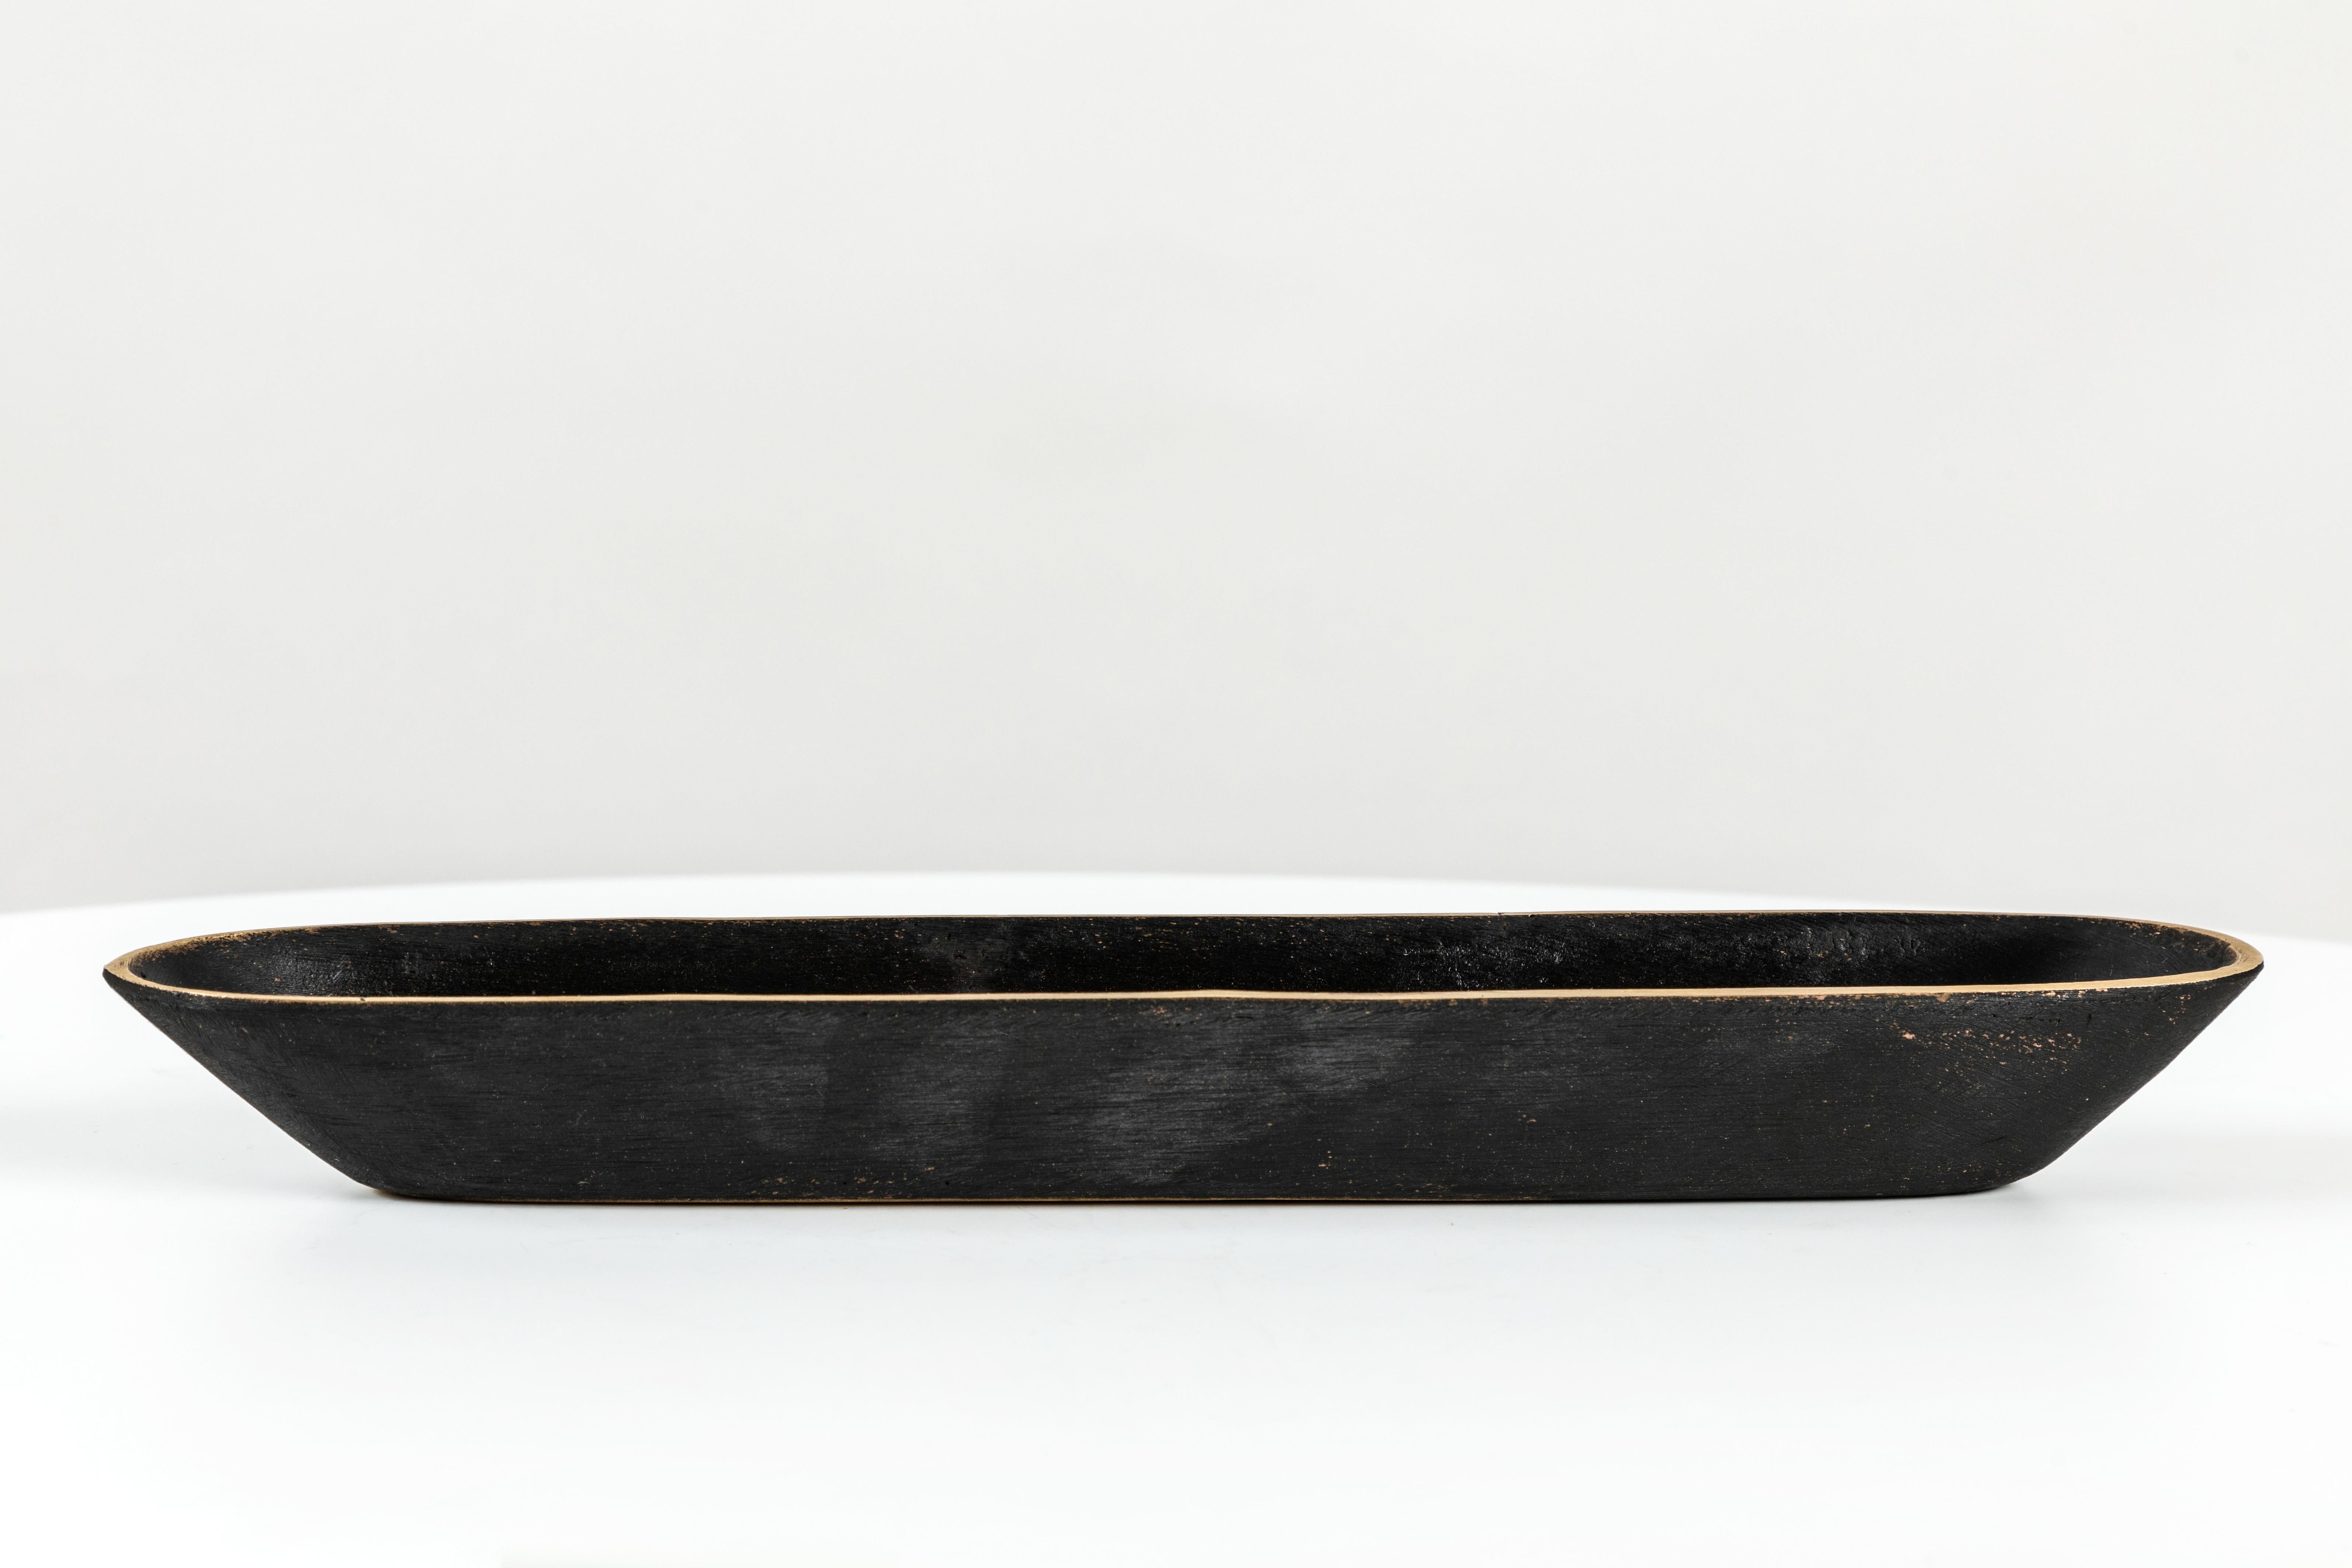 Carl Auböck Modèle #4317 bol en laiton. Conçu dans les années 1950, ce bol viennois sculptural et incroyablement raffiné est réalisé en laiton poli avec une patine foncée. Conçu à l'origine comme un porte-stylo à plume, ce récipient décoratif peut